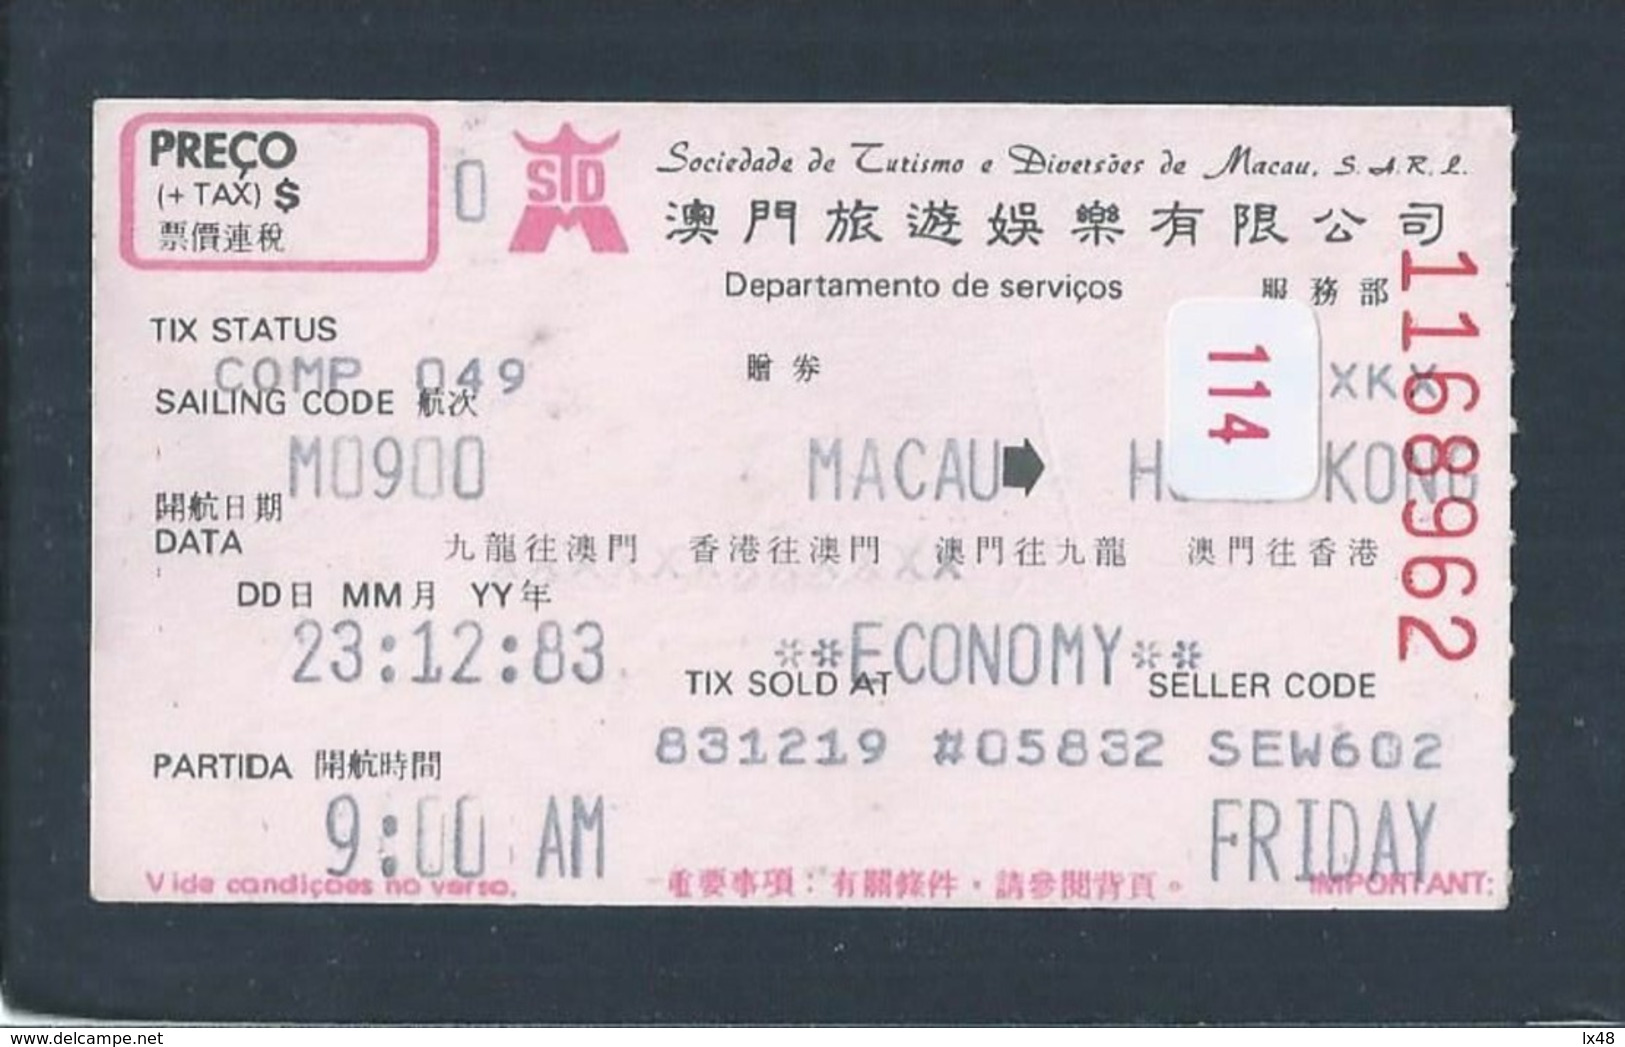 Macao Transport Ticket - Hong Kong. Macau Amusement Company. Macao Fahrschein - Hong Kong. Billets De Transport. Macau - Welt